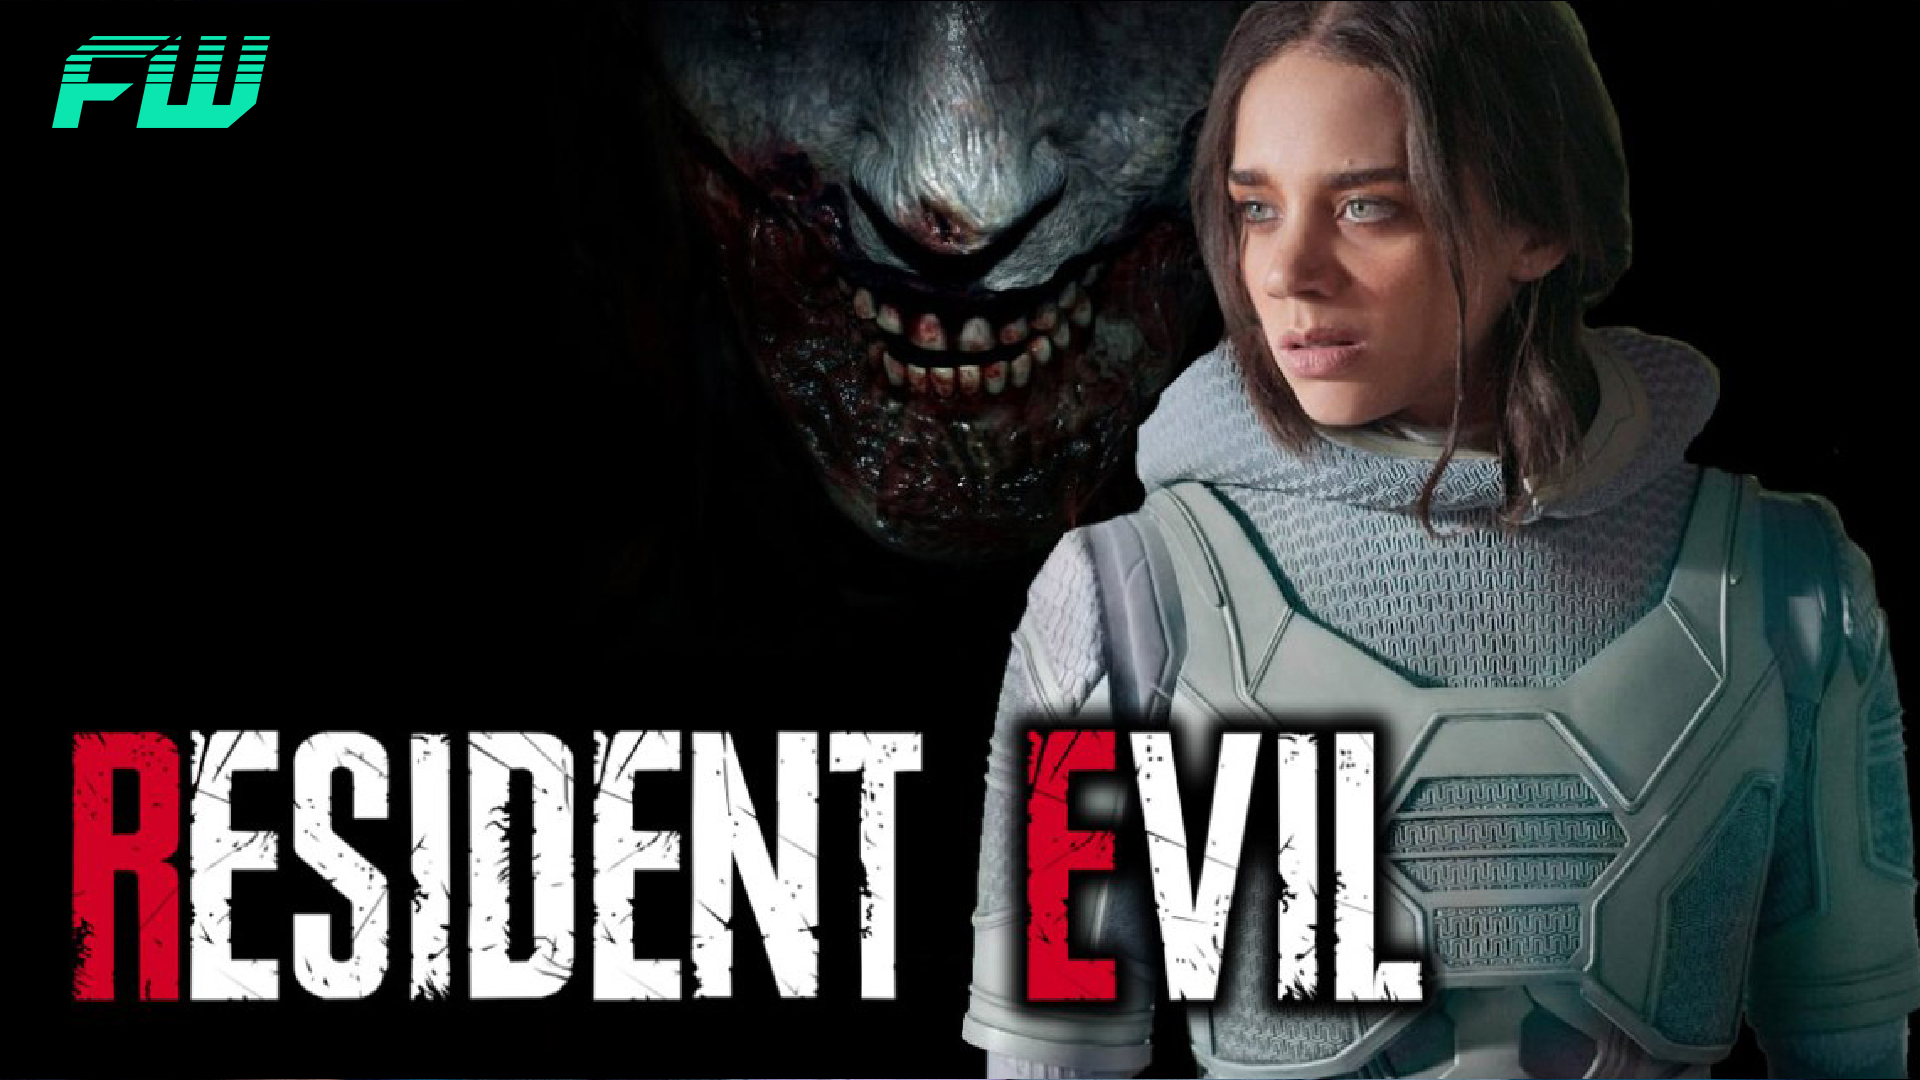 New Resident Evil Reboot Details Revealed